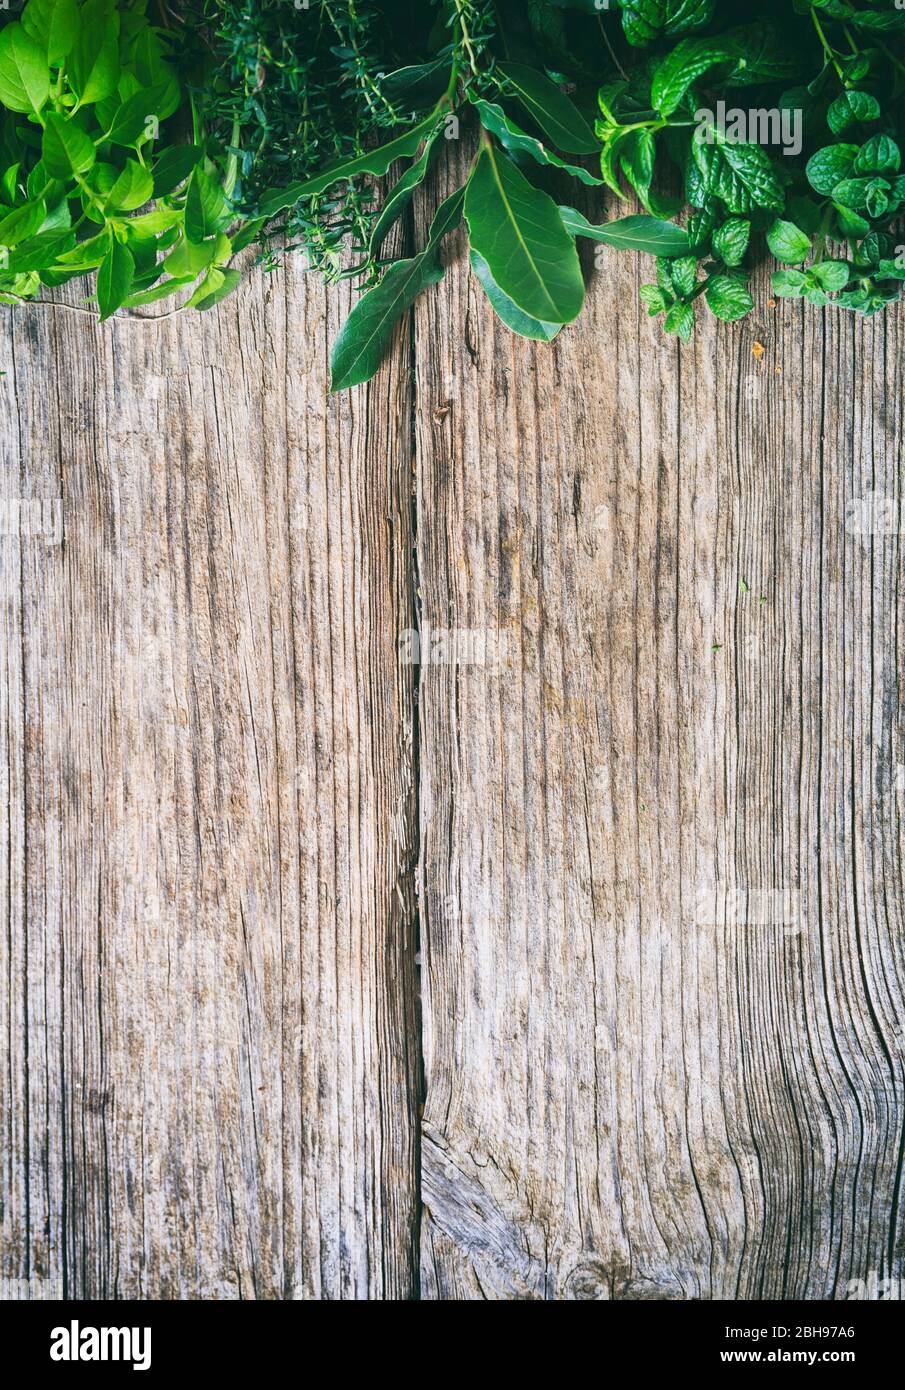 Frische Kräuter, Basilikum, Minze, Thymian aromatische Blätter umrandet oben auf einem alten Holzhintergrund. Copyspace, vertikales Hochformat. Stockfoto